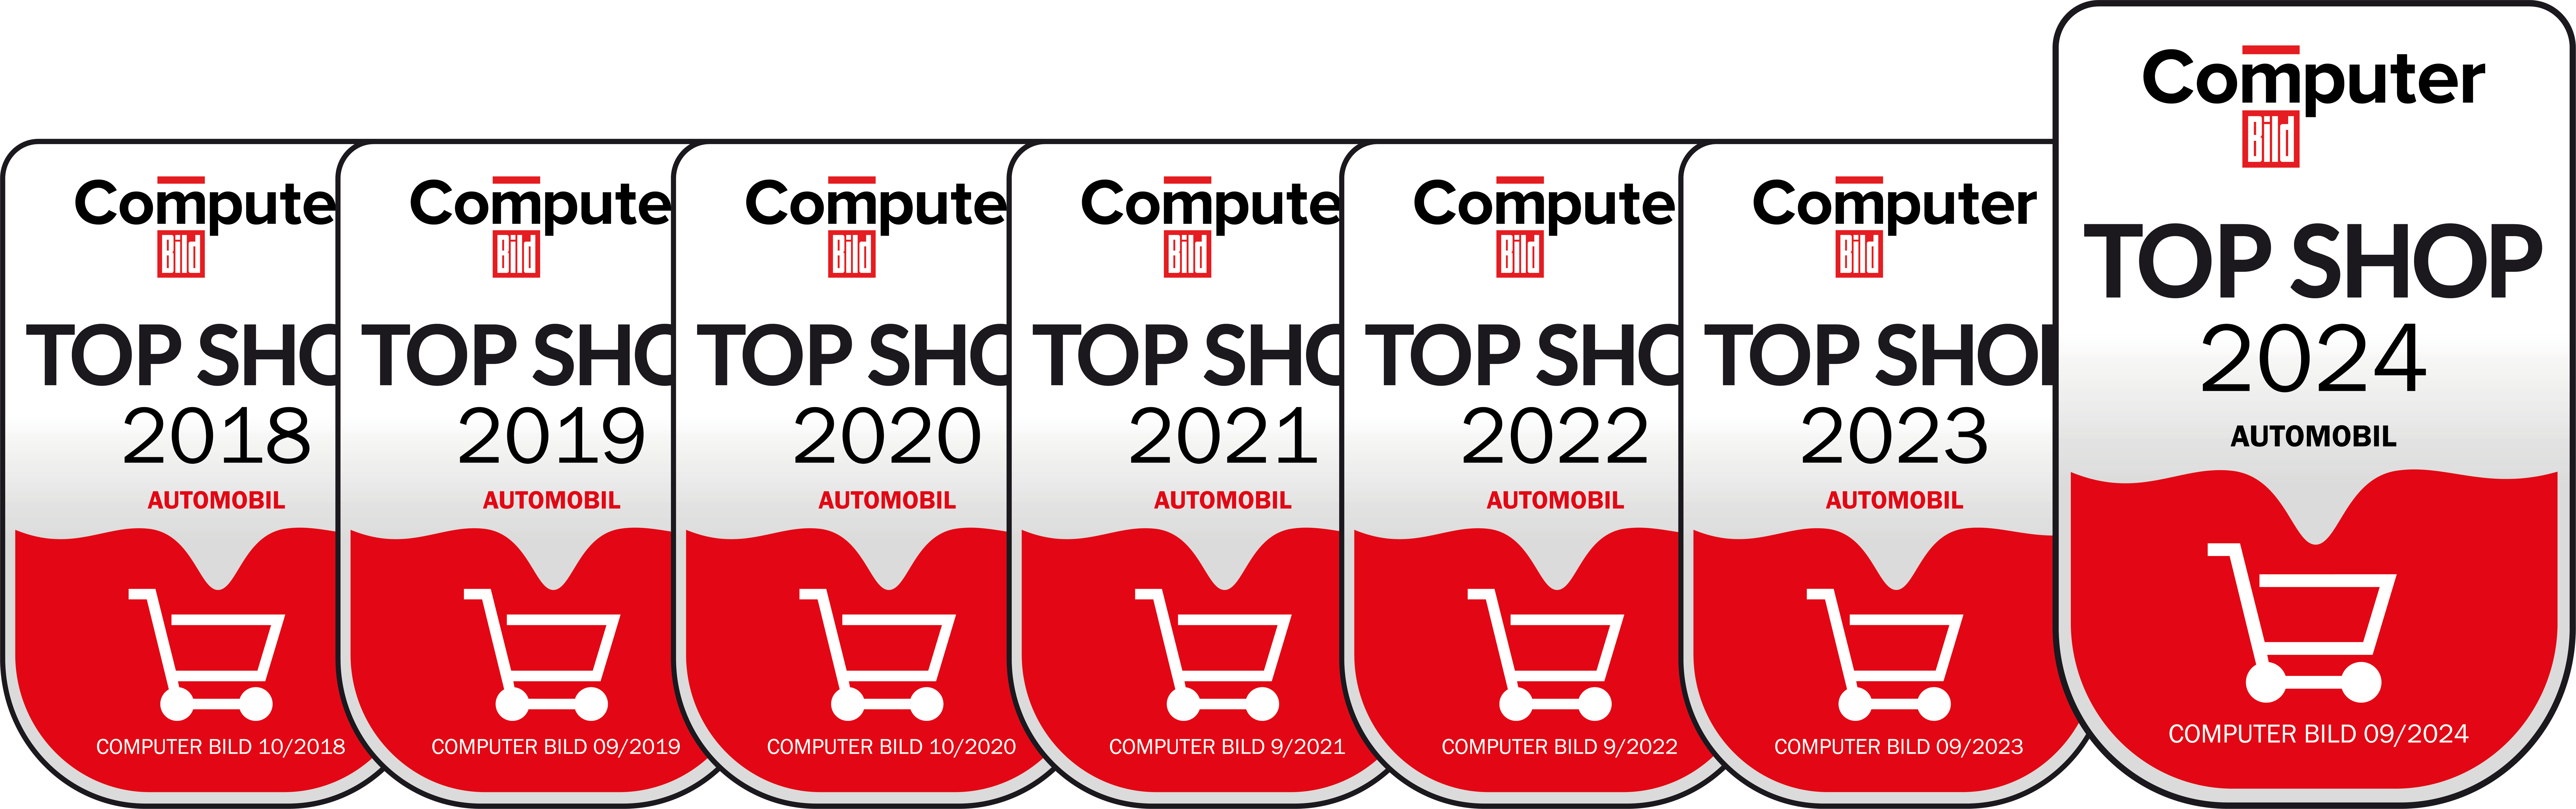 Top Shop 2018-2024